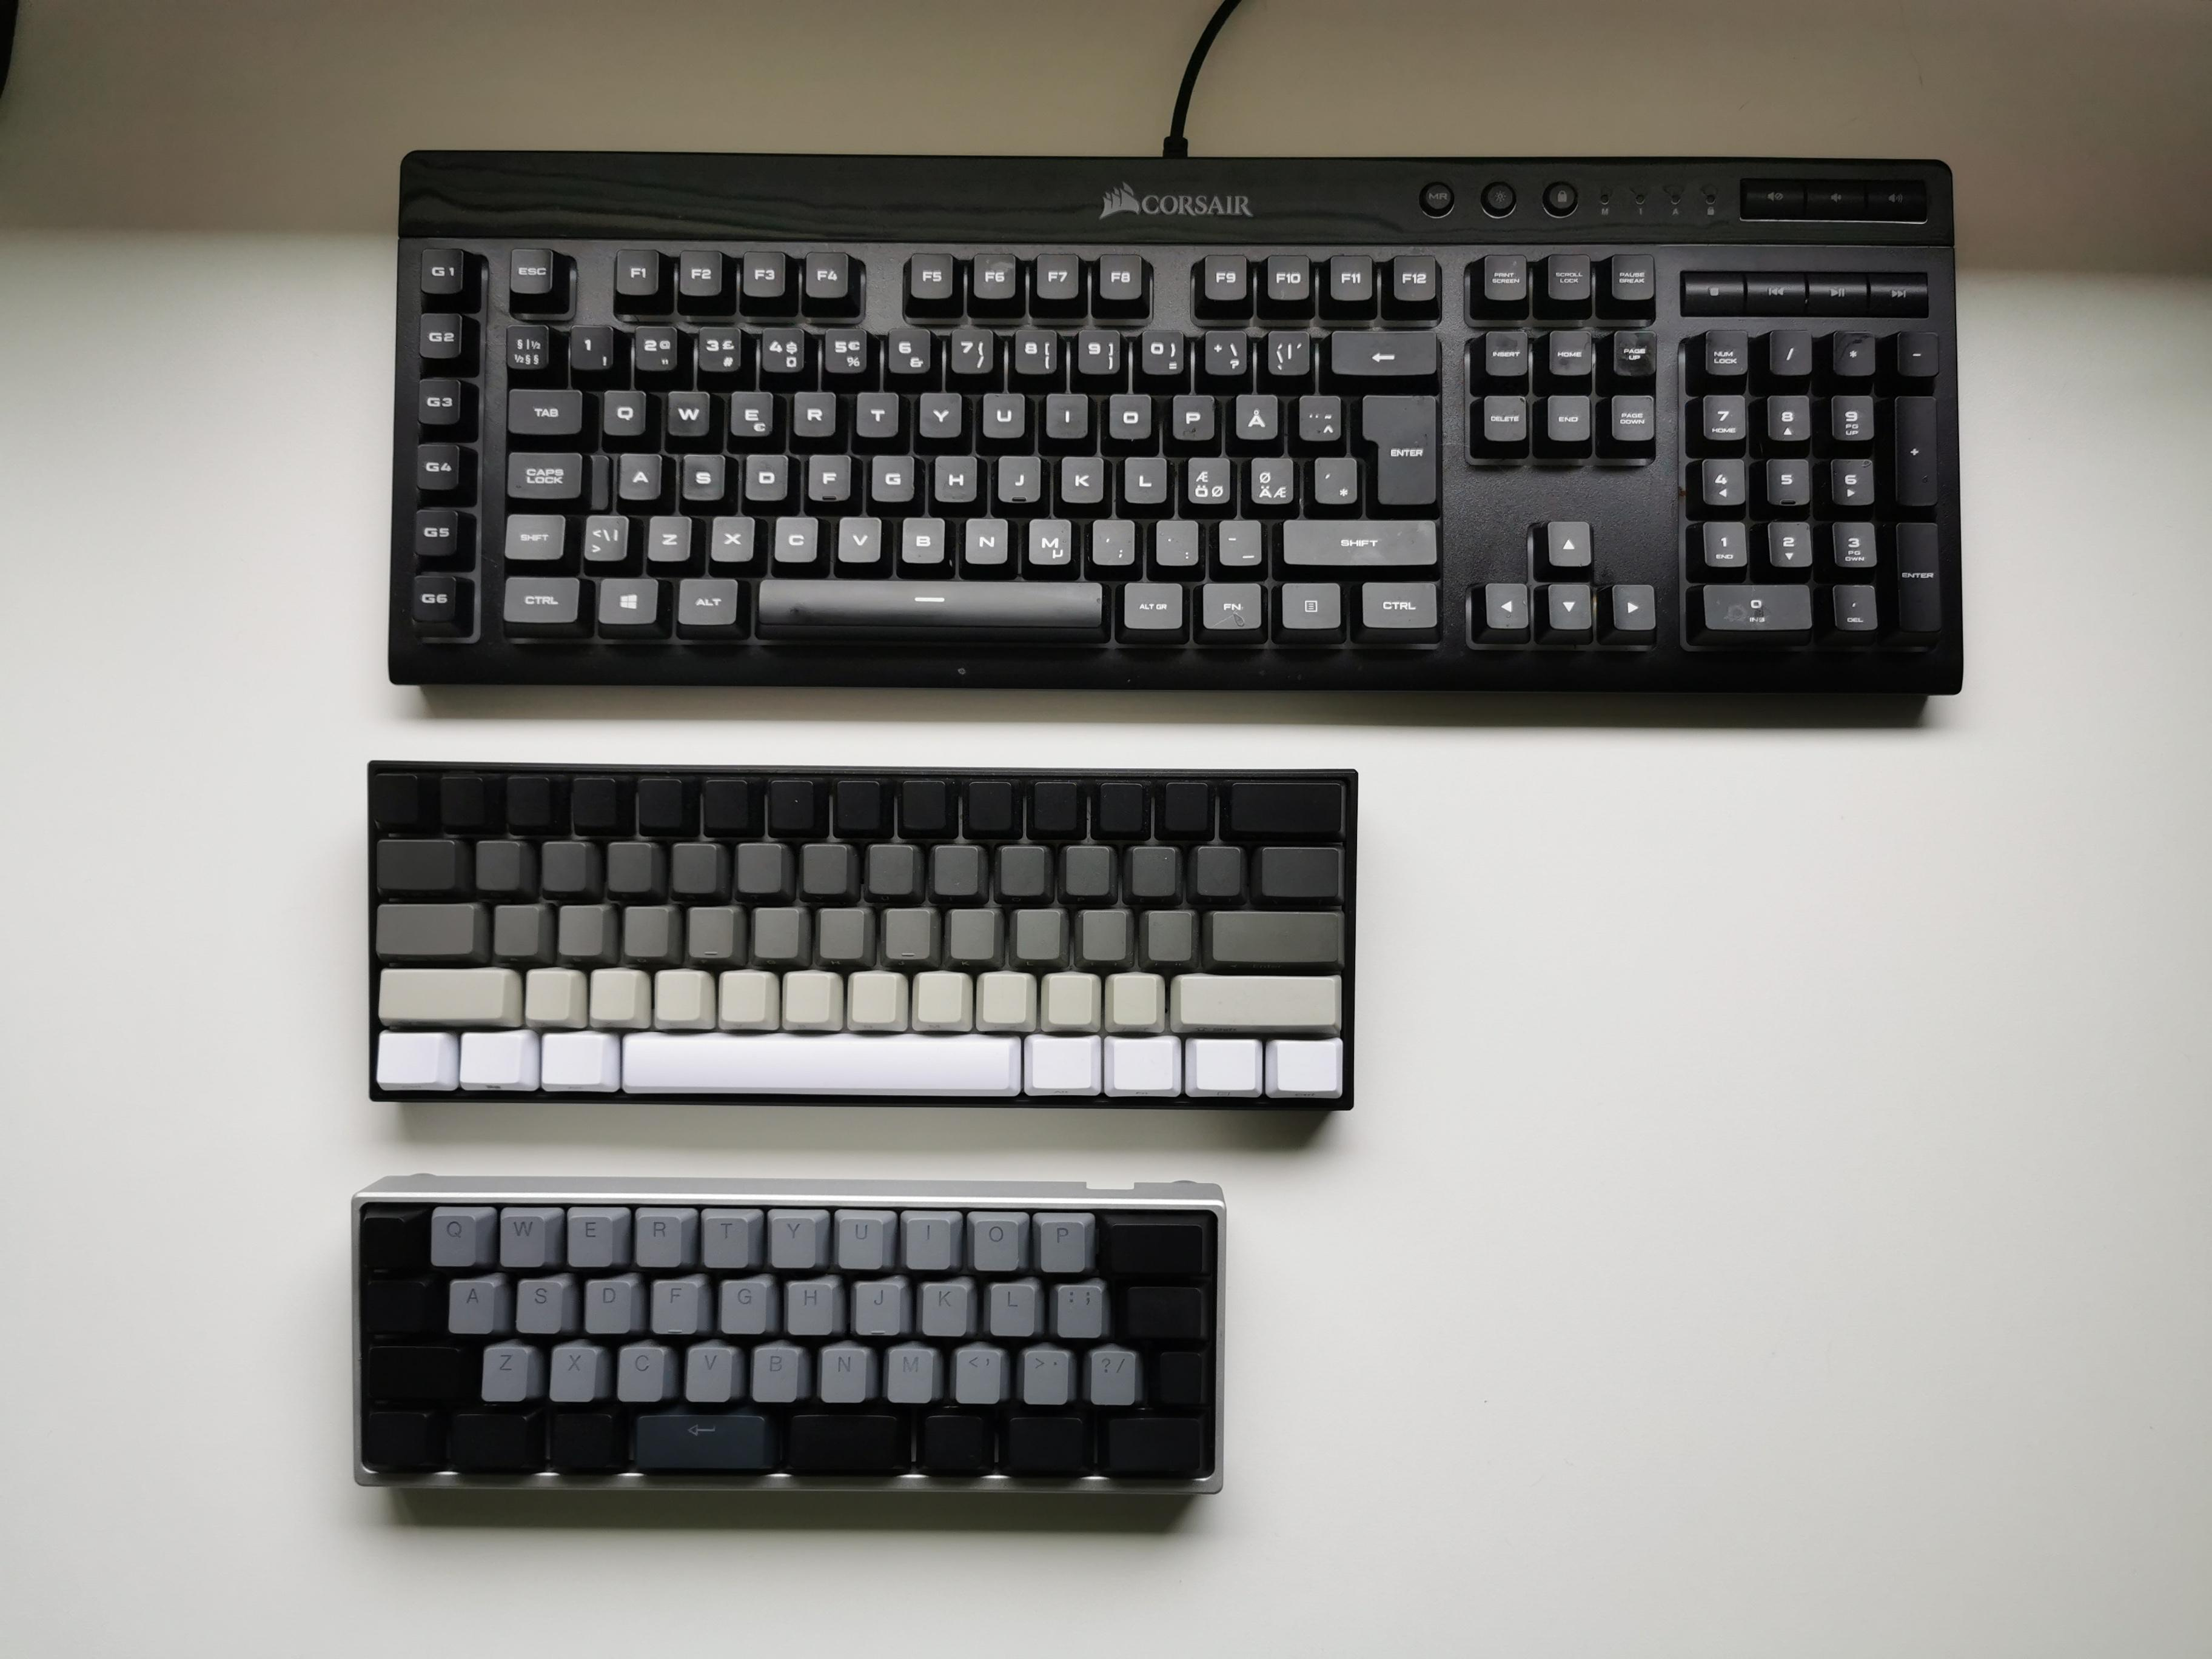 3 claviers en différentes tailles 100, 60 et 40 pourcents